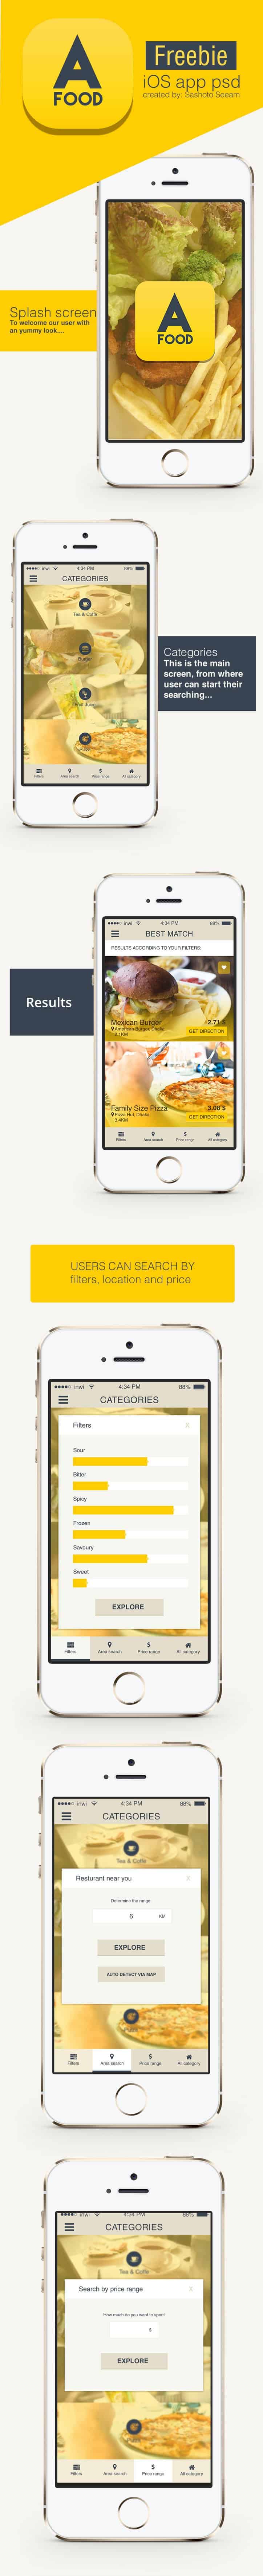 Free iOS Restaurant Finder App PSD